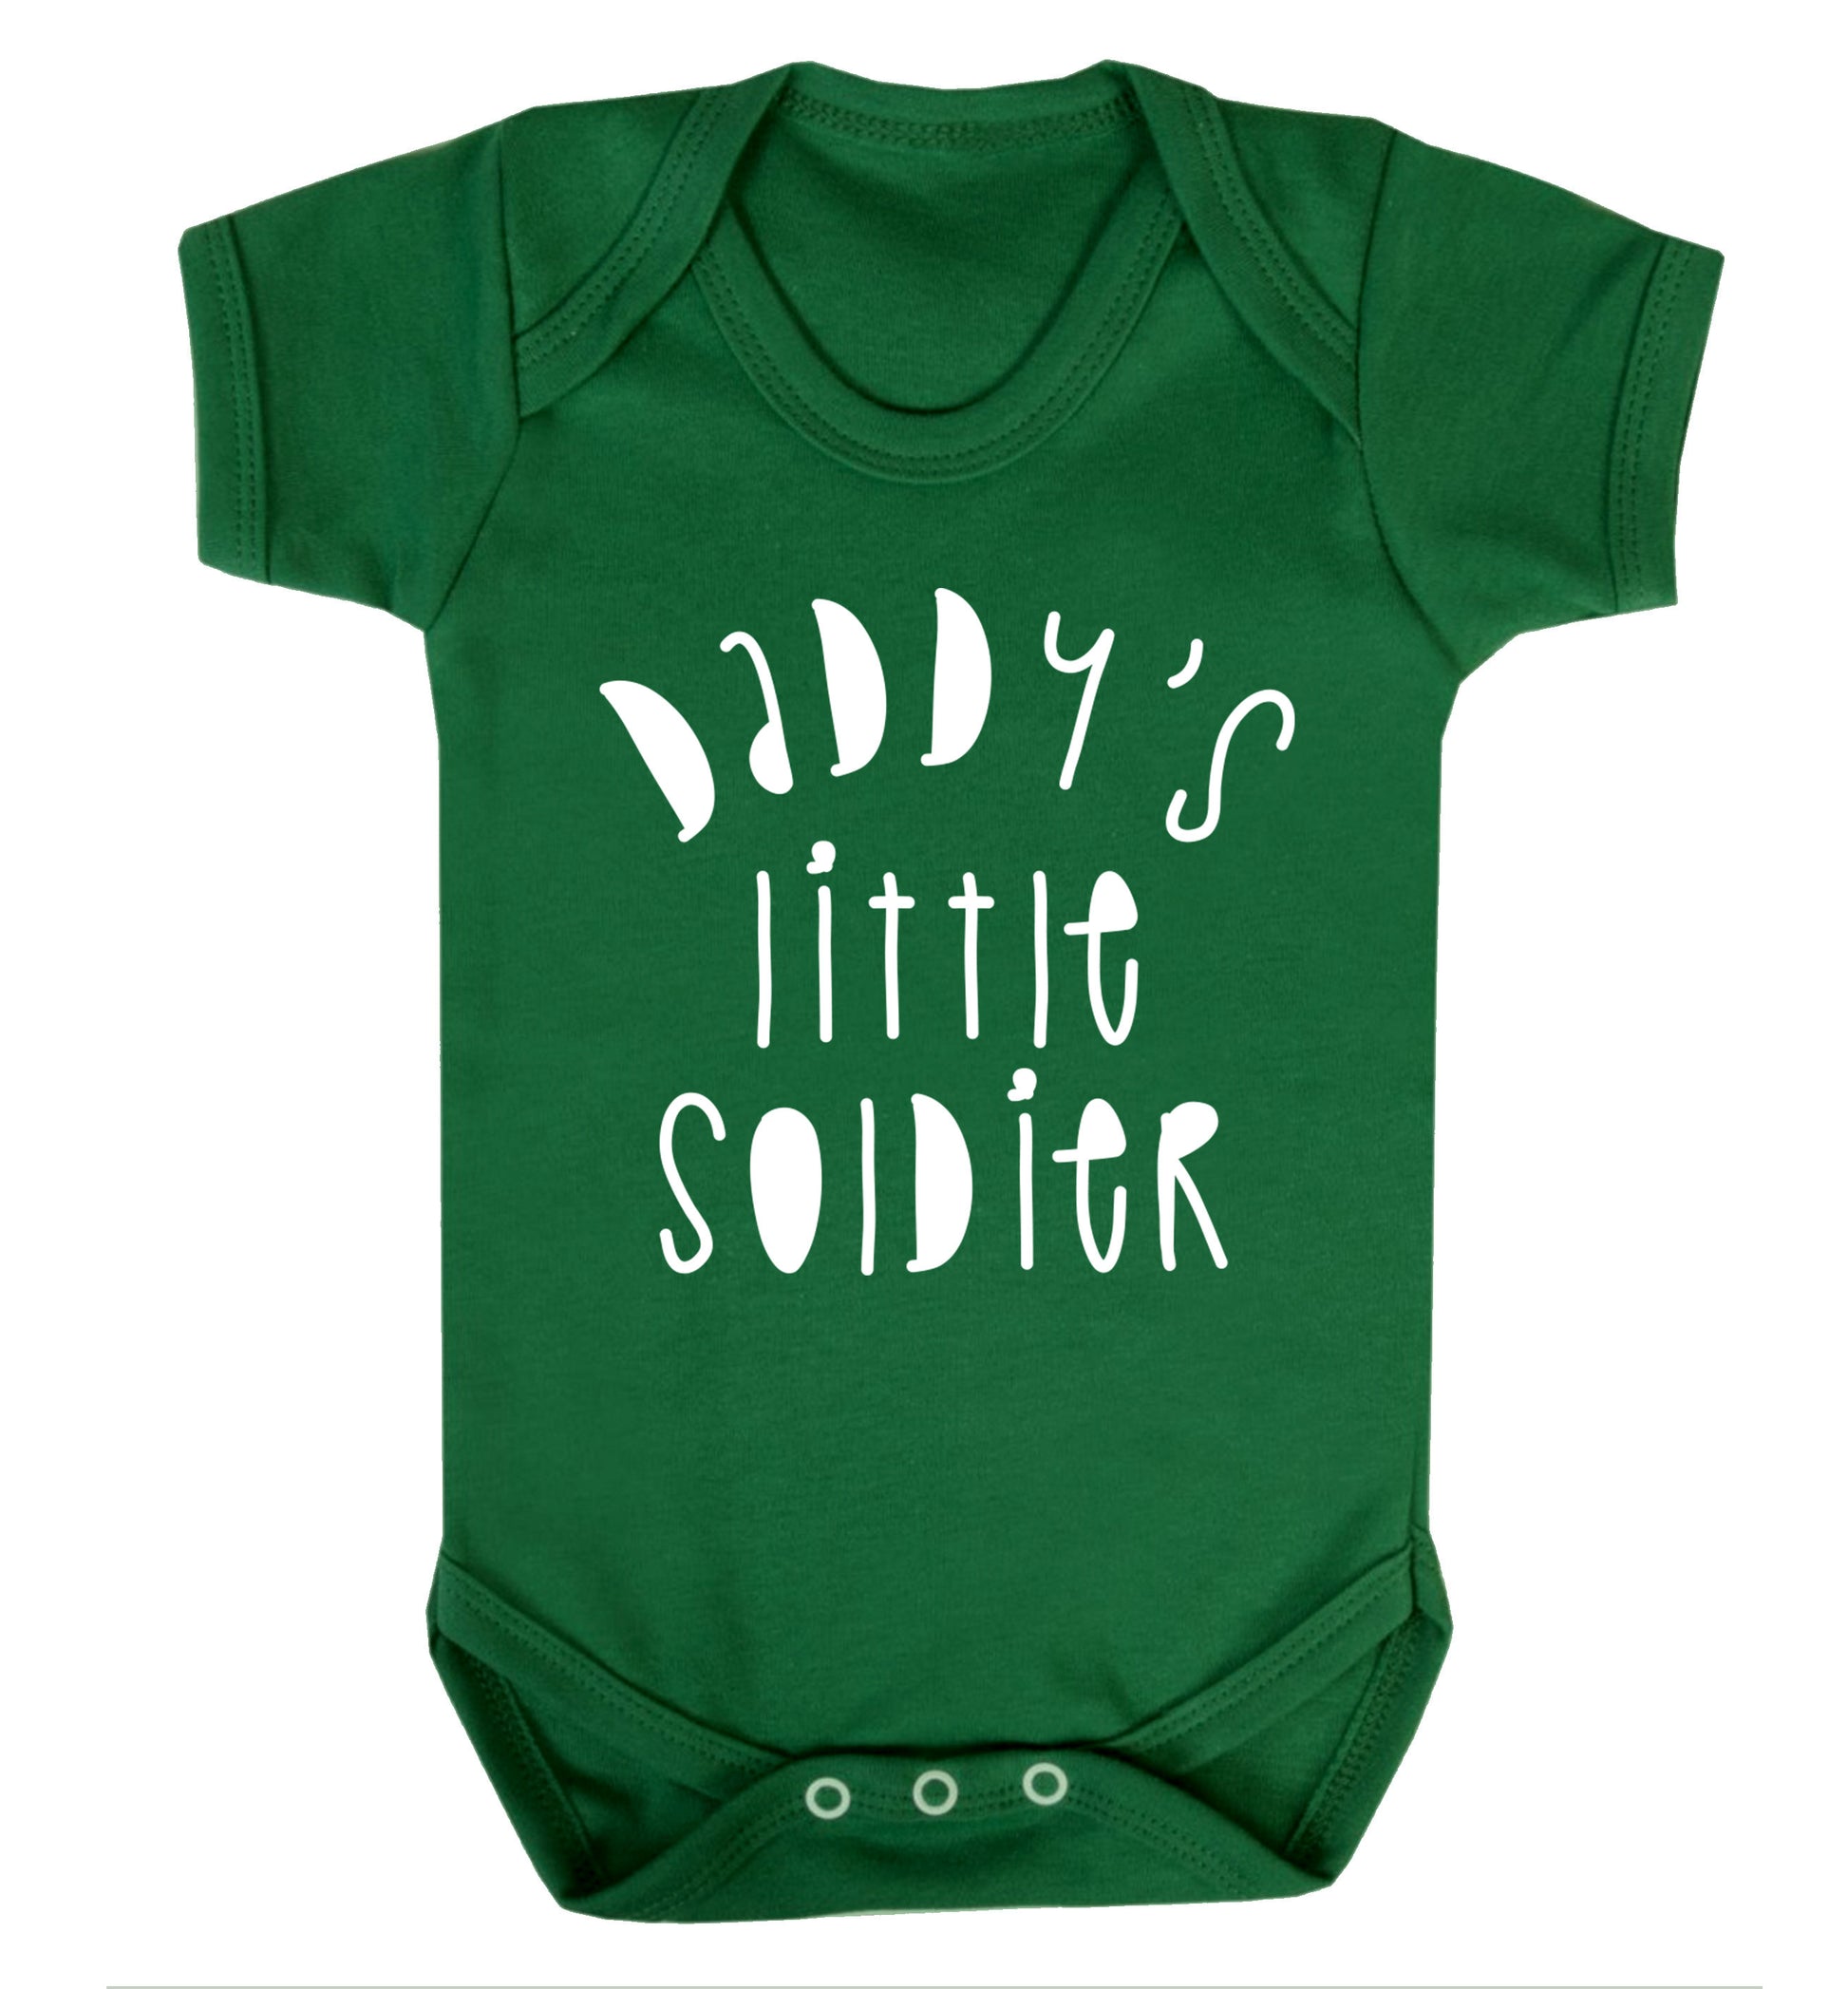 Daddy's little soldier Baby Vest green 18-24 months